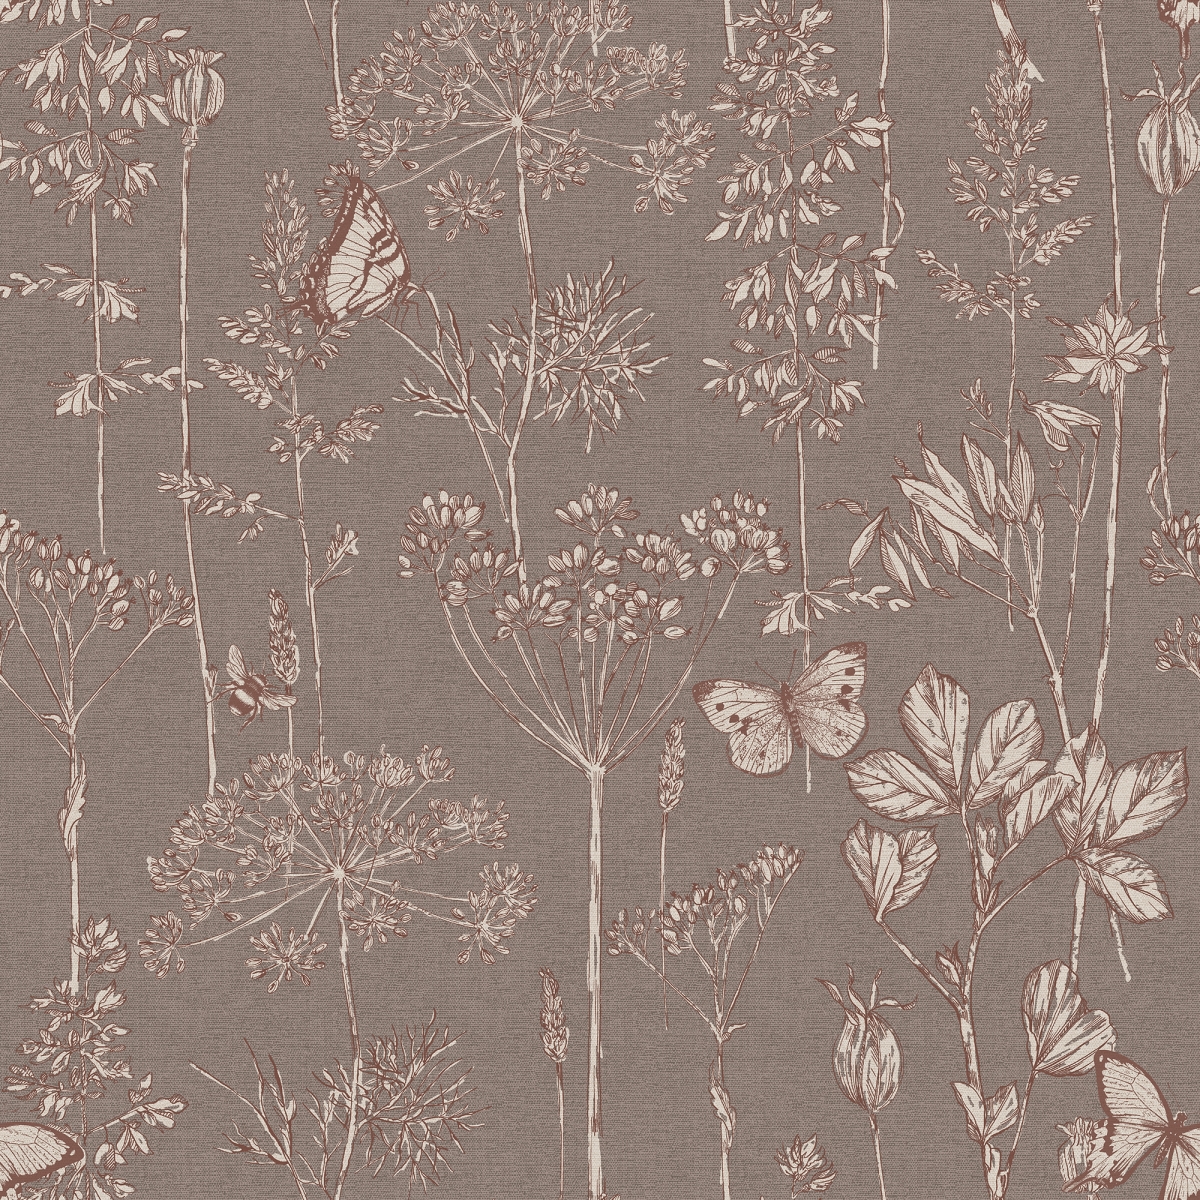 904106 Meadow Floral Non-woven Wallpaper, Chocolate